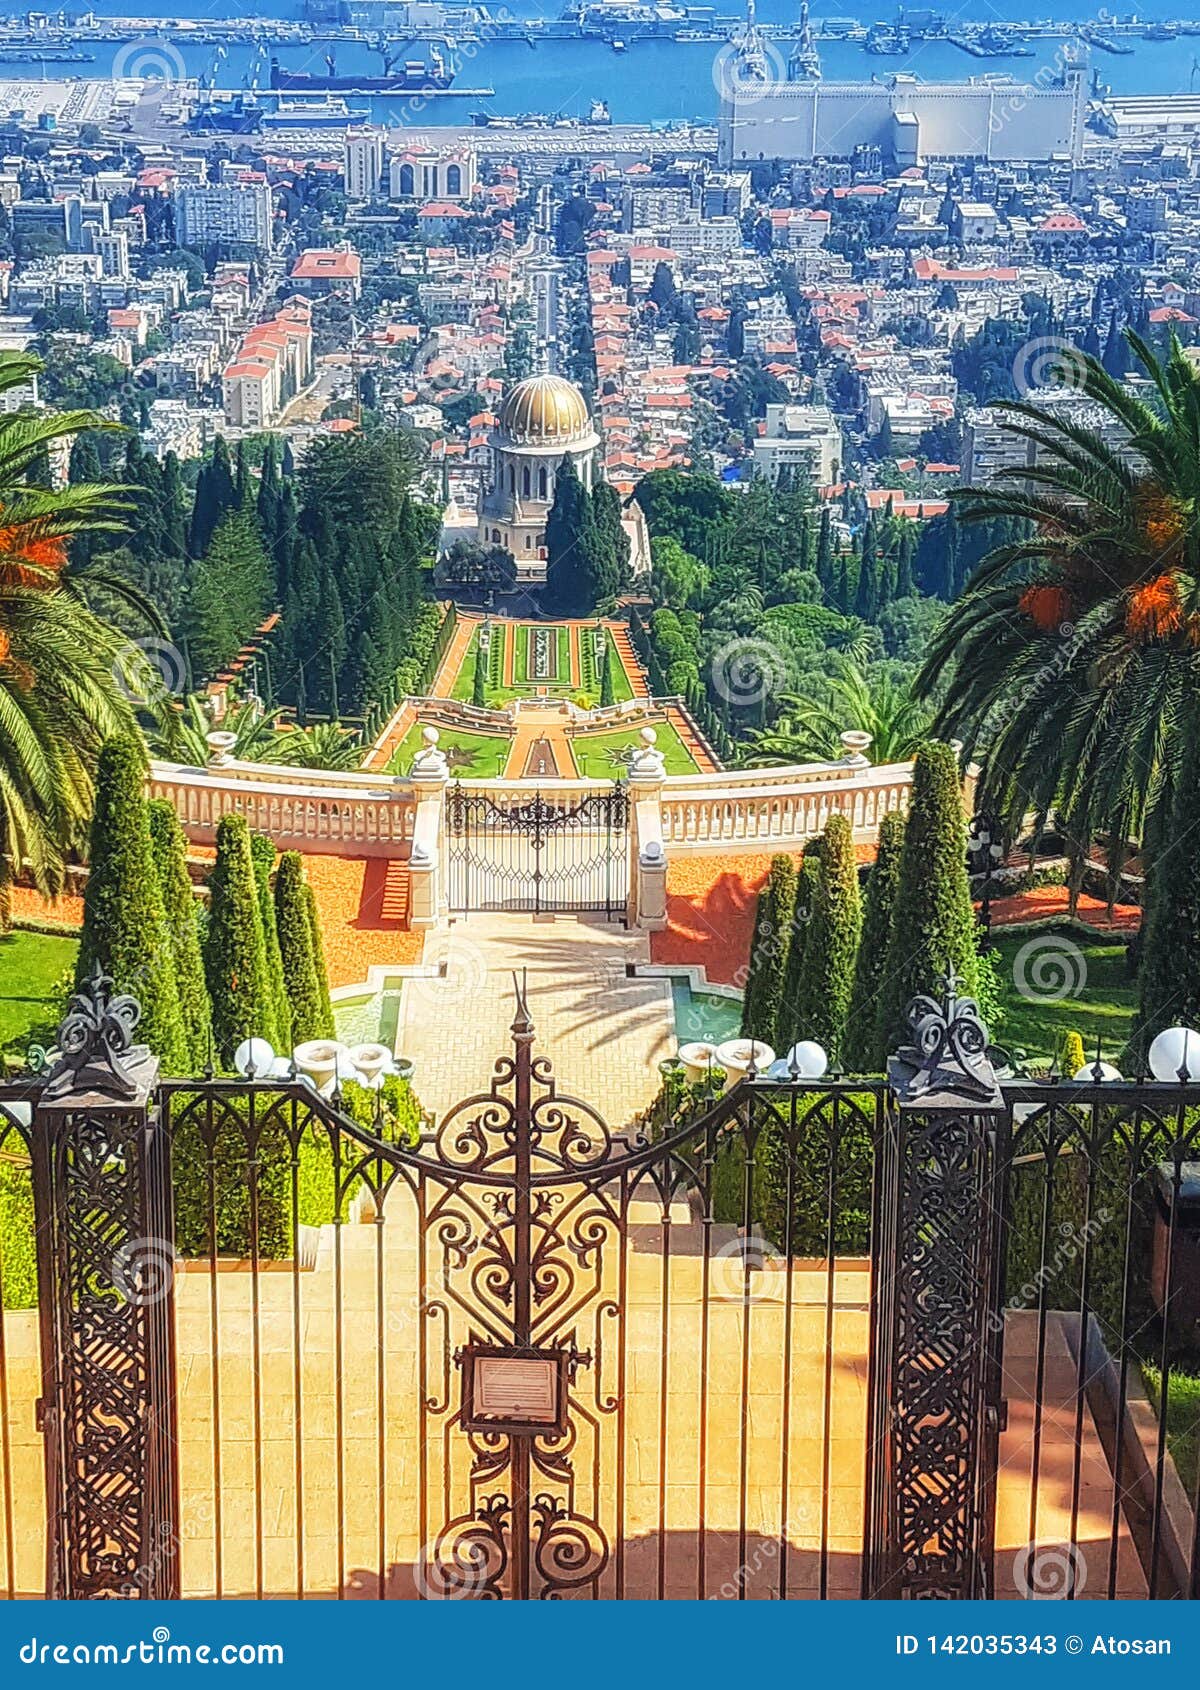 Una Vista General De Los Jardines Colgantes De La Capilla Del Bab En El Monte Carmelo, Haifa, Israel archivo - Imagen de ciudad, planta: 142035343